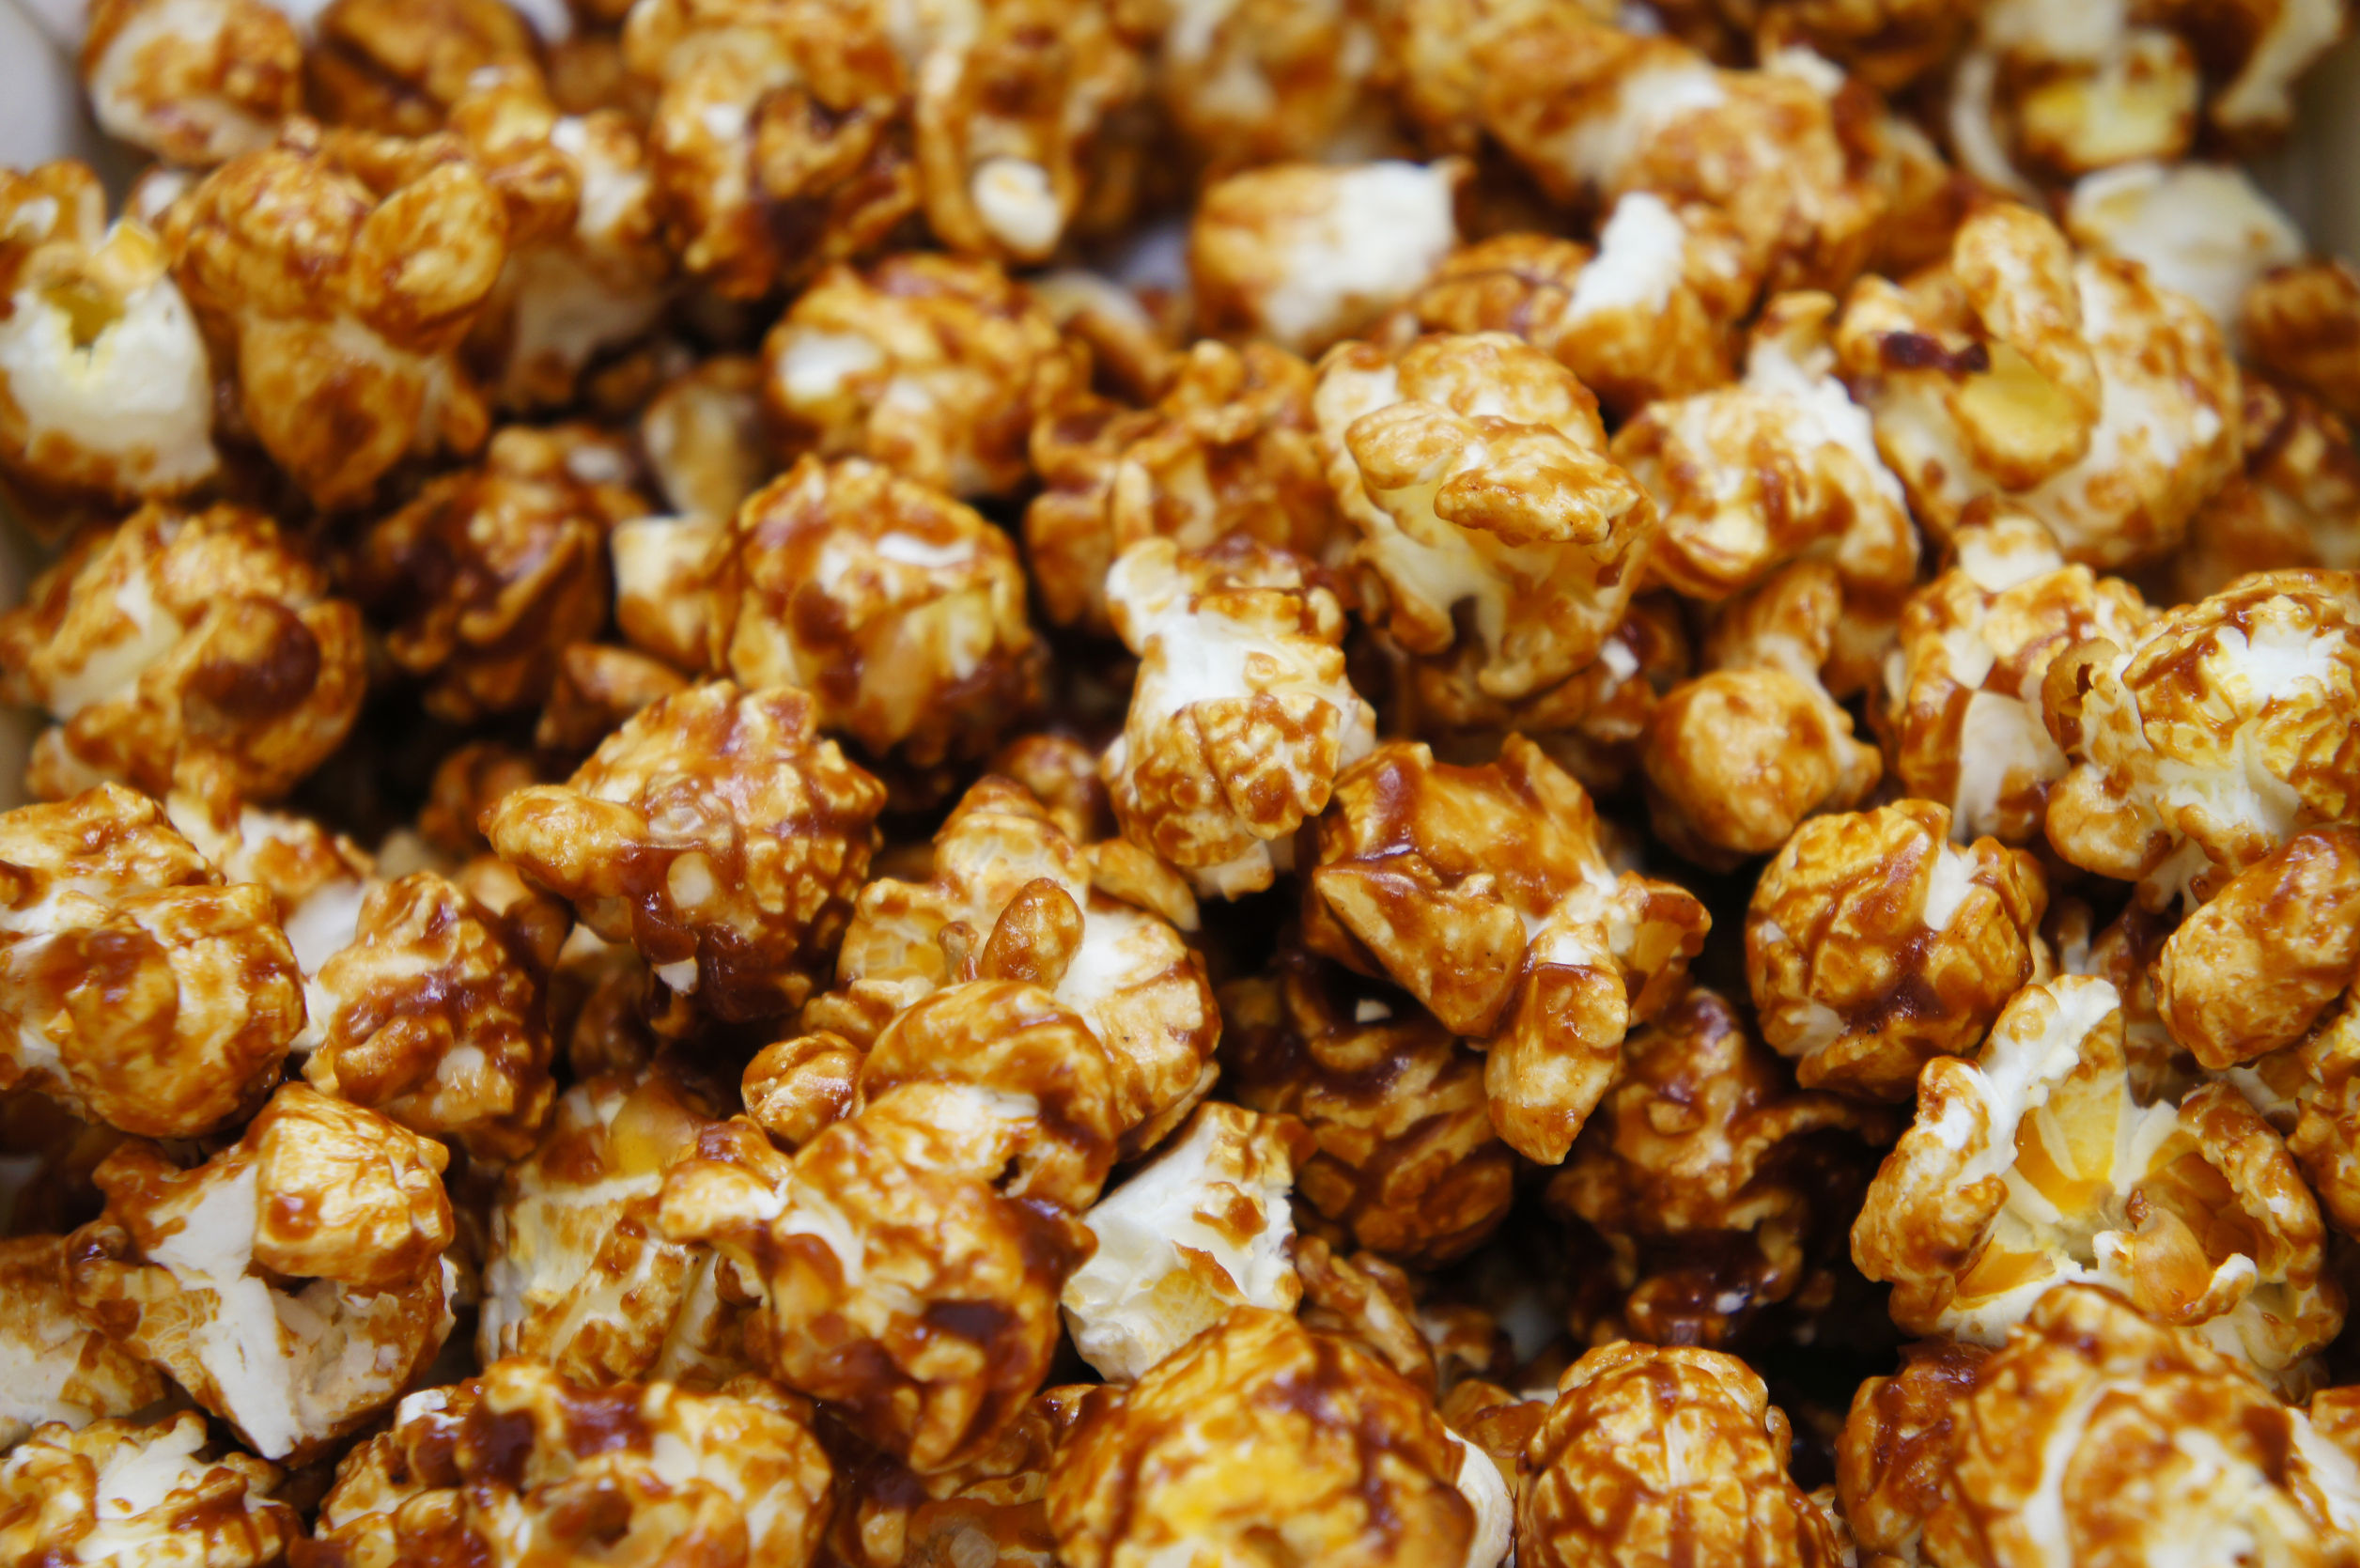 Popcorn cu caramel de casa - floricele de porumb caramelizate